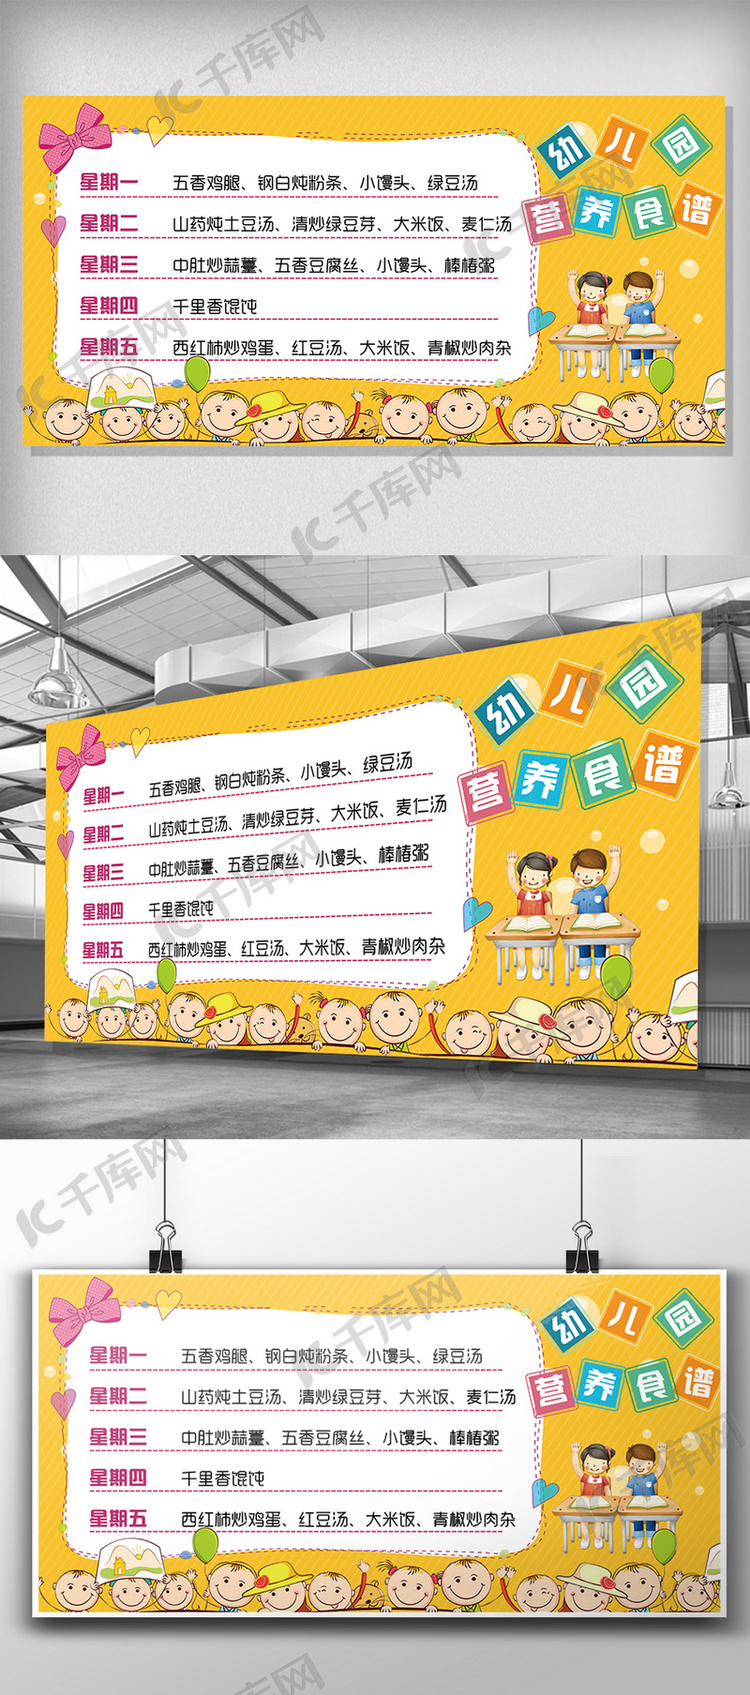 卡通背景幼儿园营养食谱展板设计